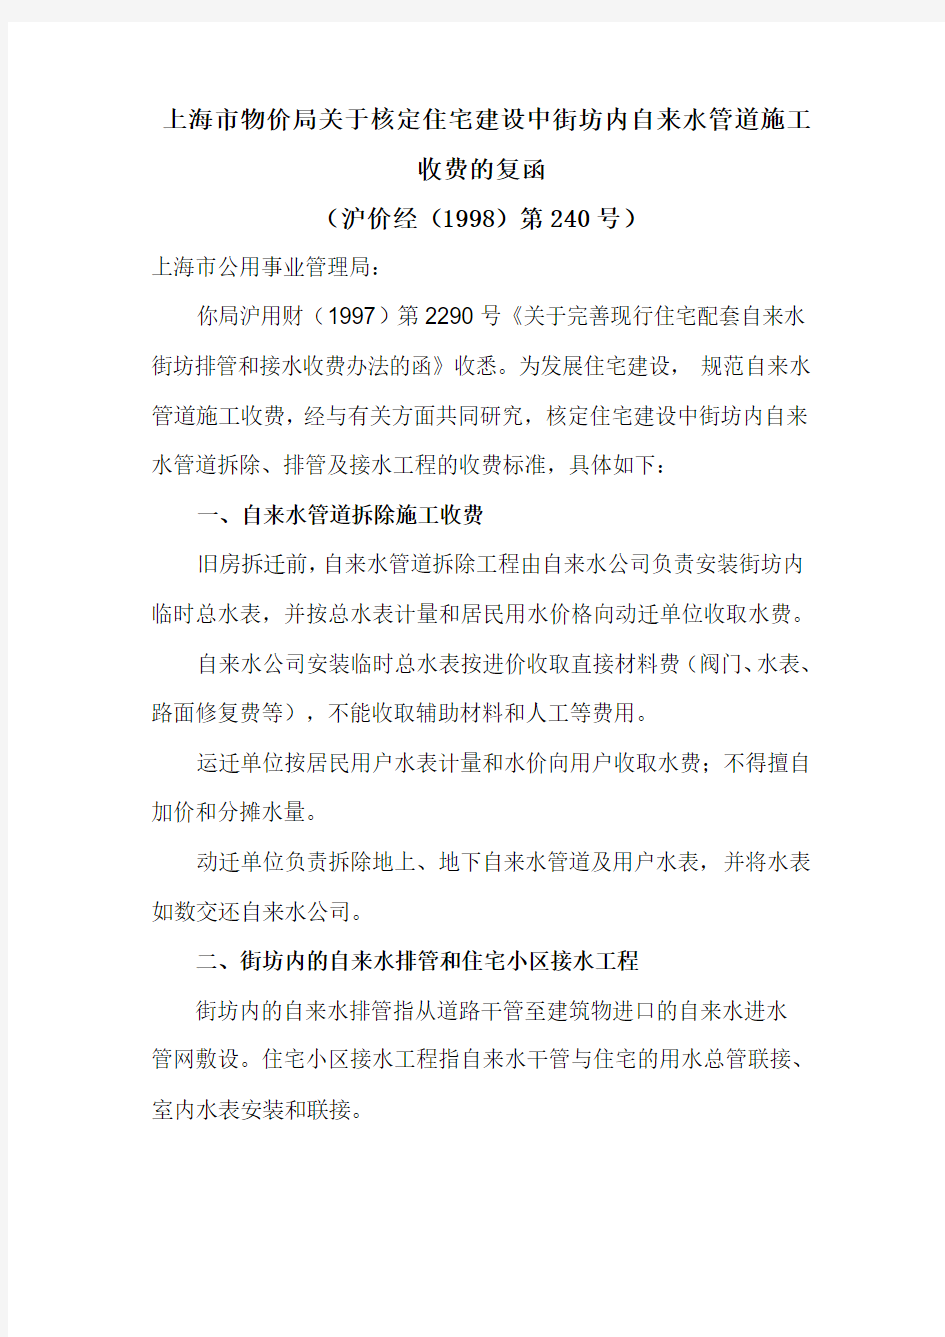 上海市物价局关于核定住宅建设中街坊内自来水管道施工收费的复函